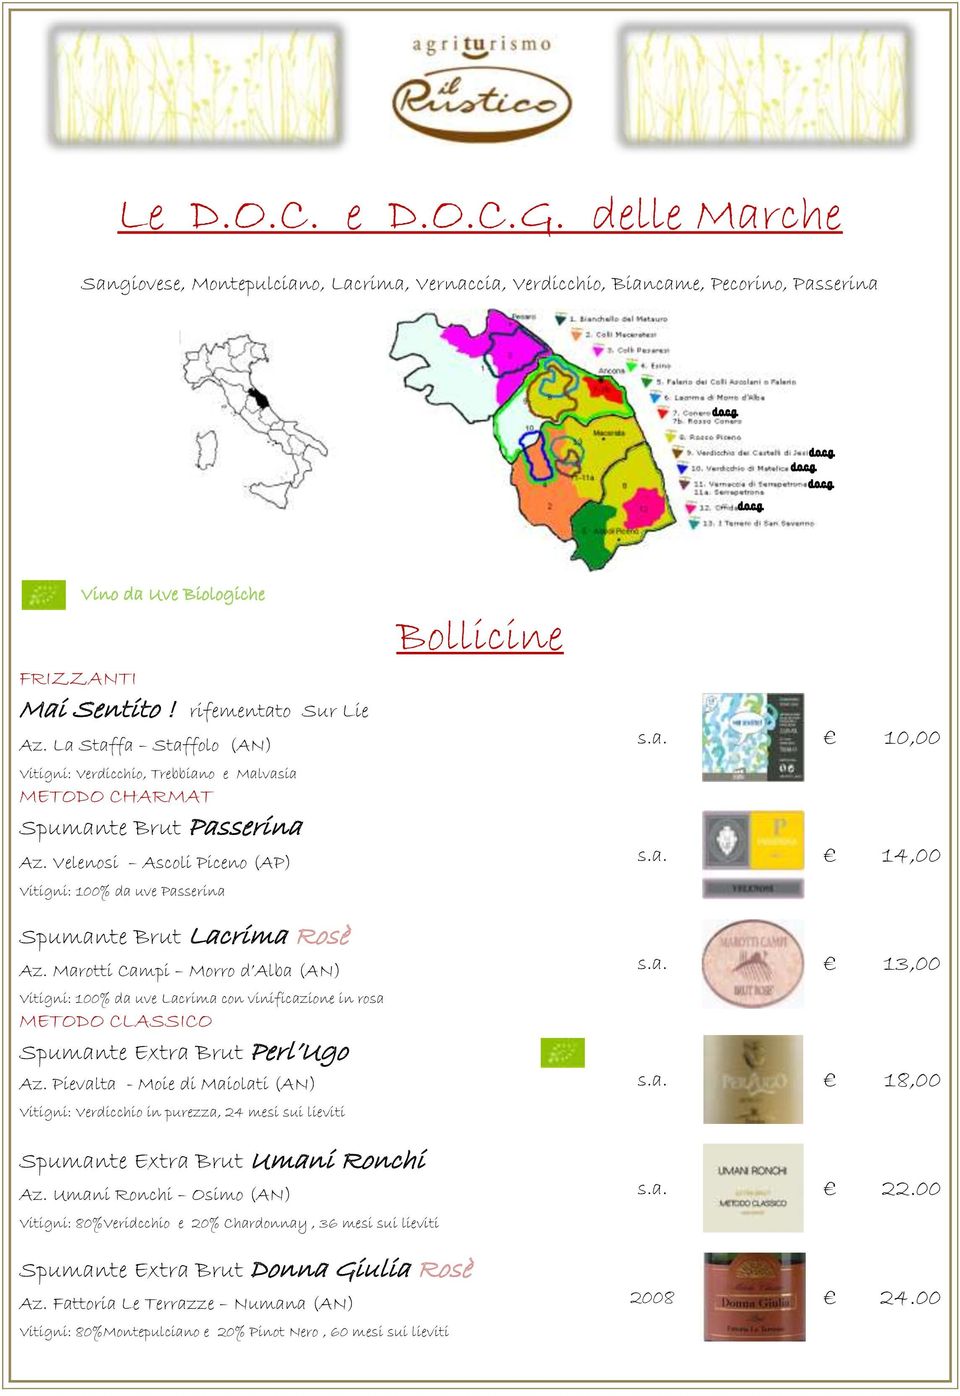 Marotti Campi Morro d Alba (AN) Vitigni: 100% da uve Lacrima con vinificazione in rosa METODO CLASSICO Spumante Extra Brut Perl Ugo Az.